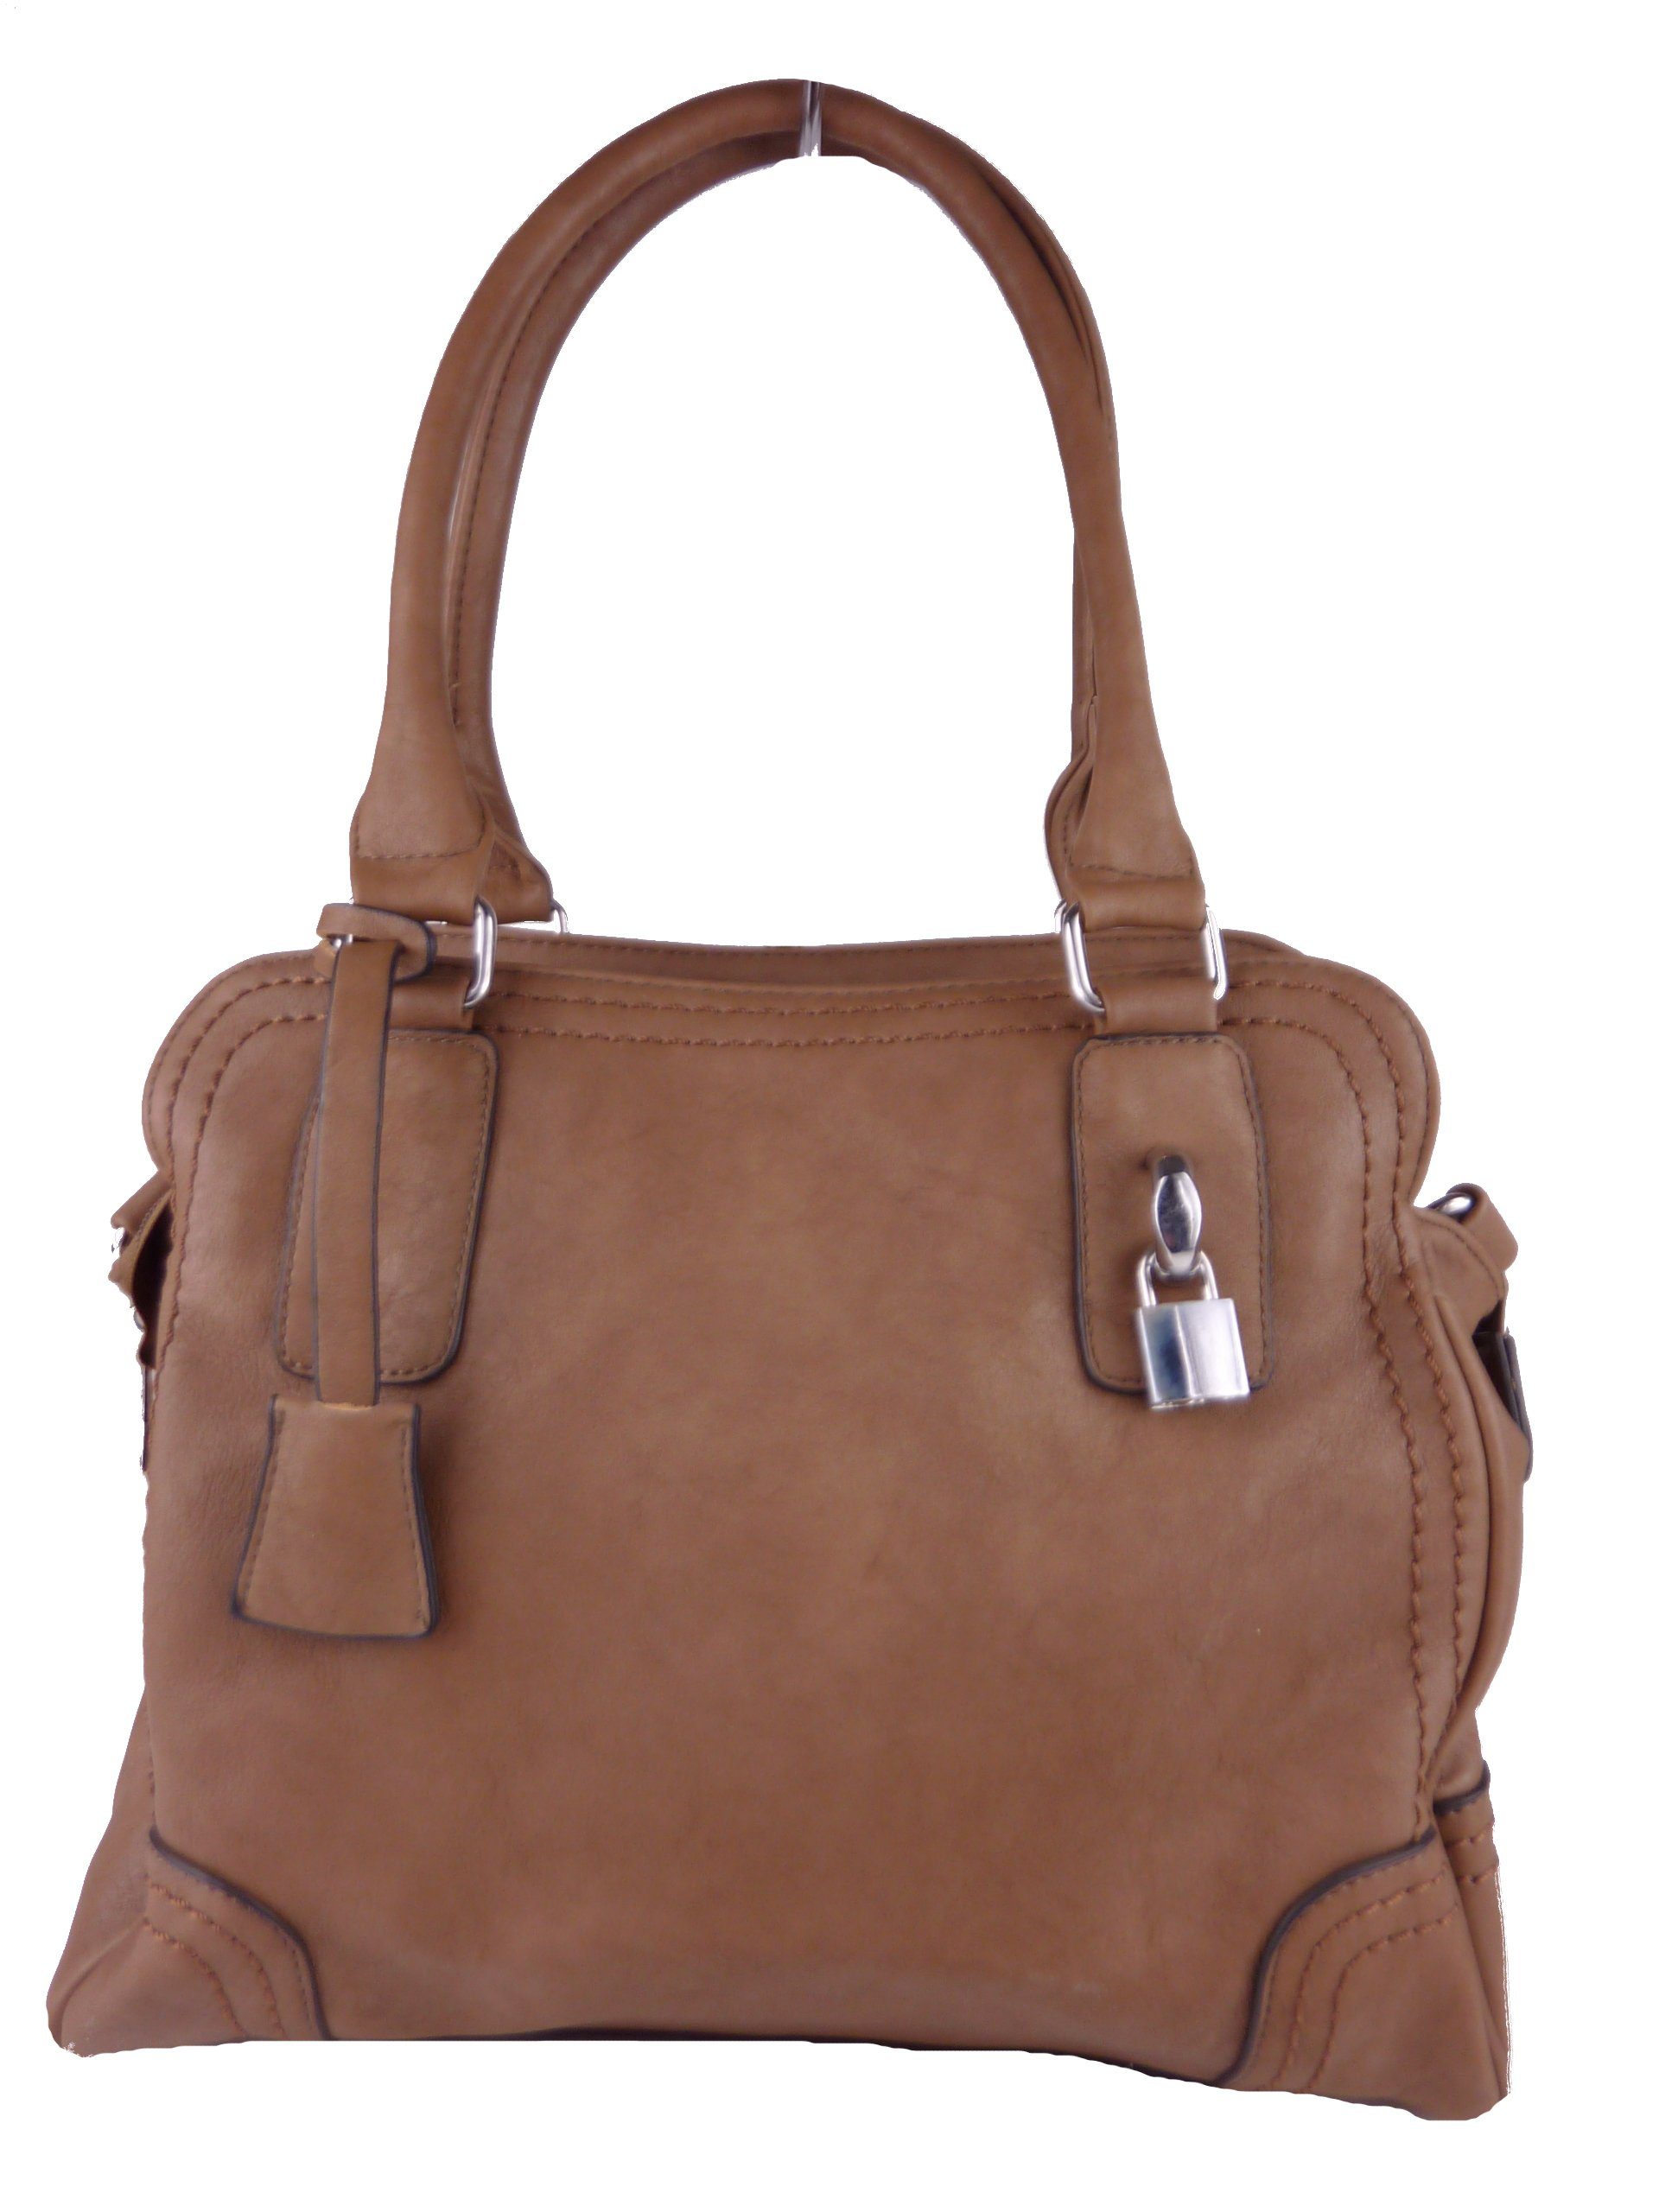 Schultertasche, klassische tote elegante satchel Taschen4life Handtasche khaki Handtasche C1125, bag, hobo